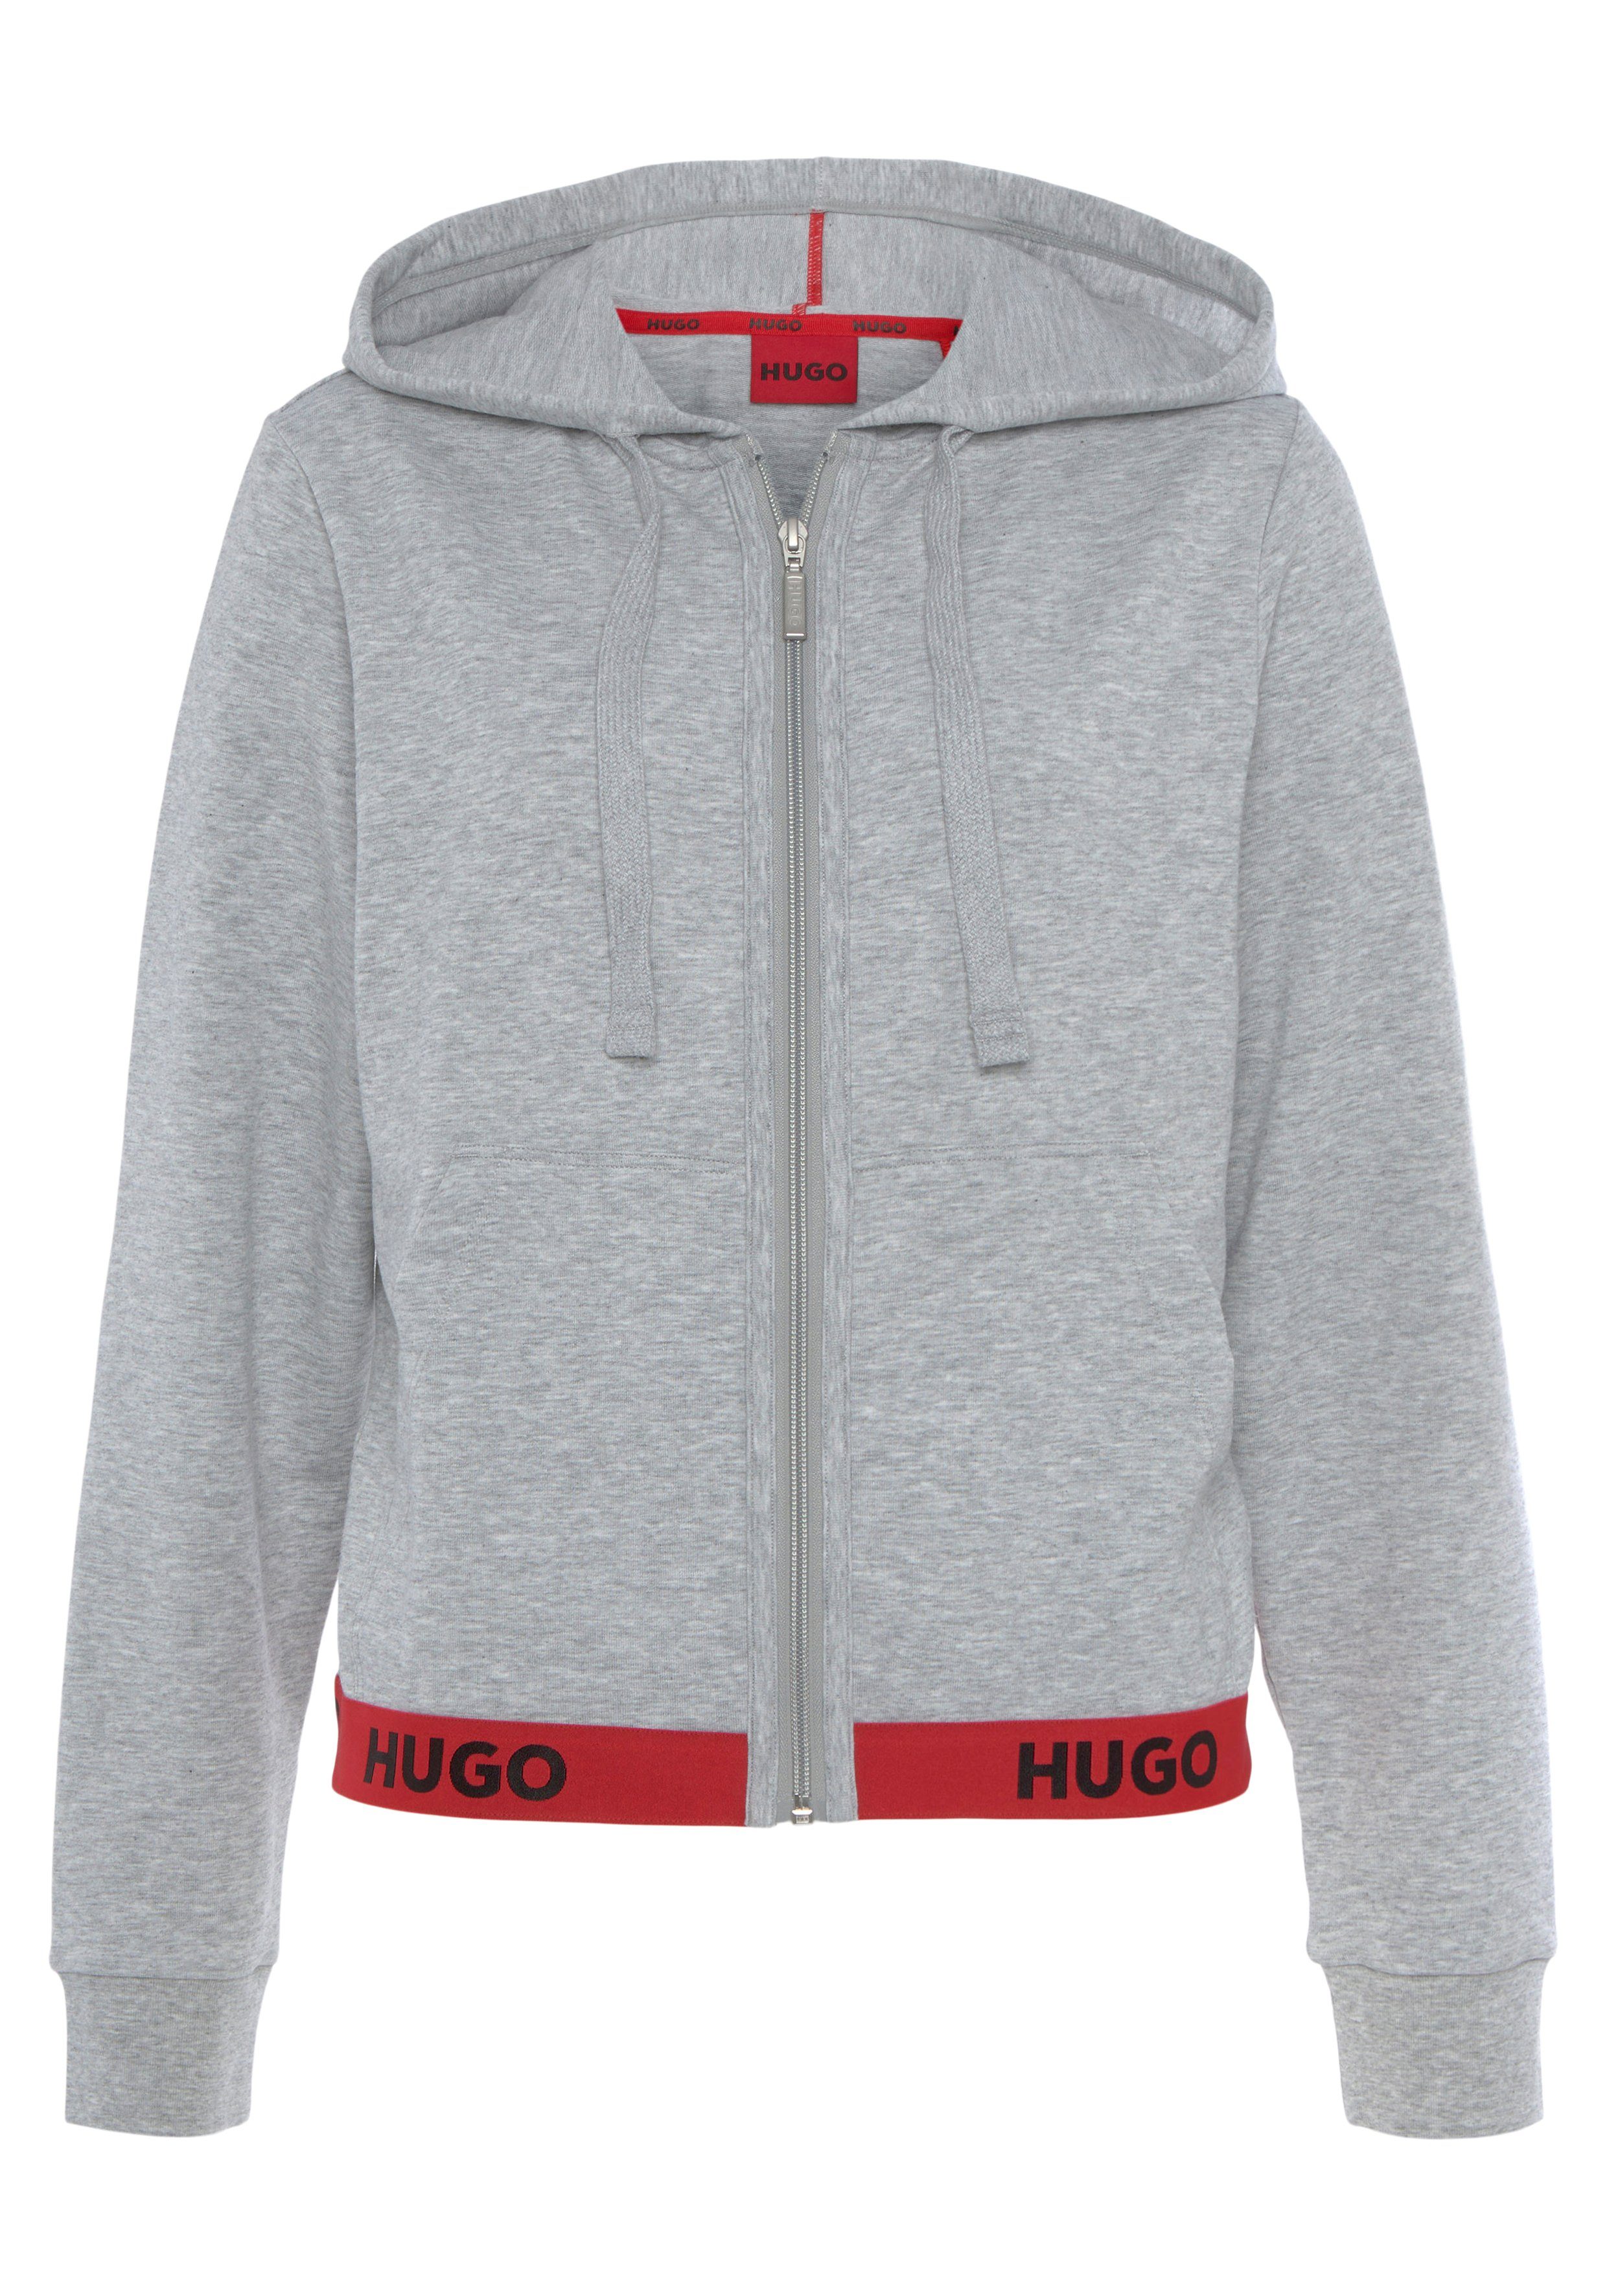 Hugo Boss Sweatjacken für Damen online kaufen | OTTO